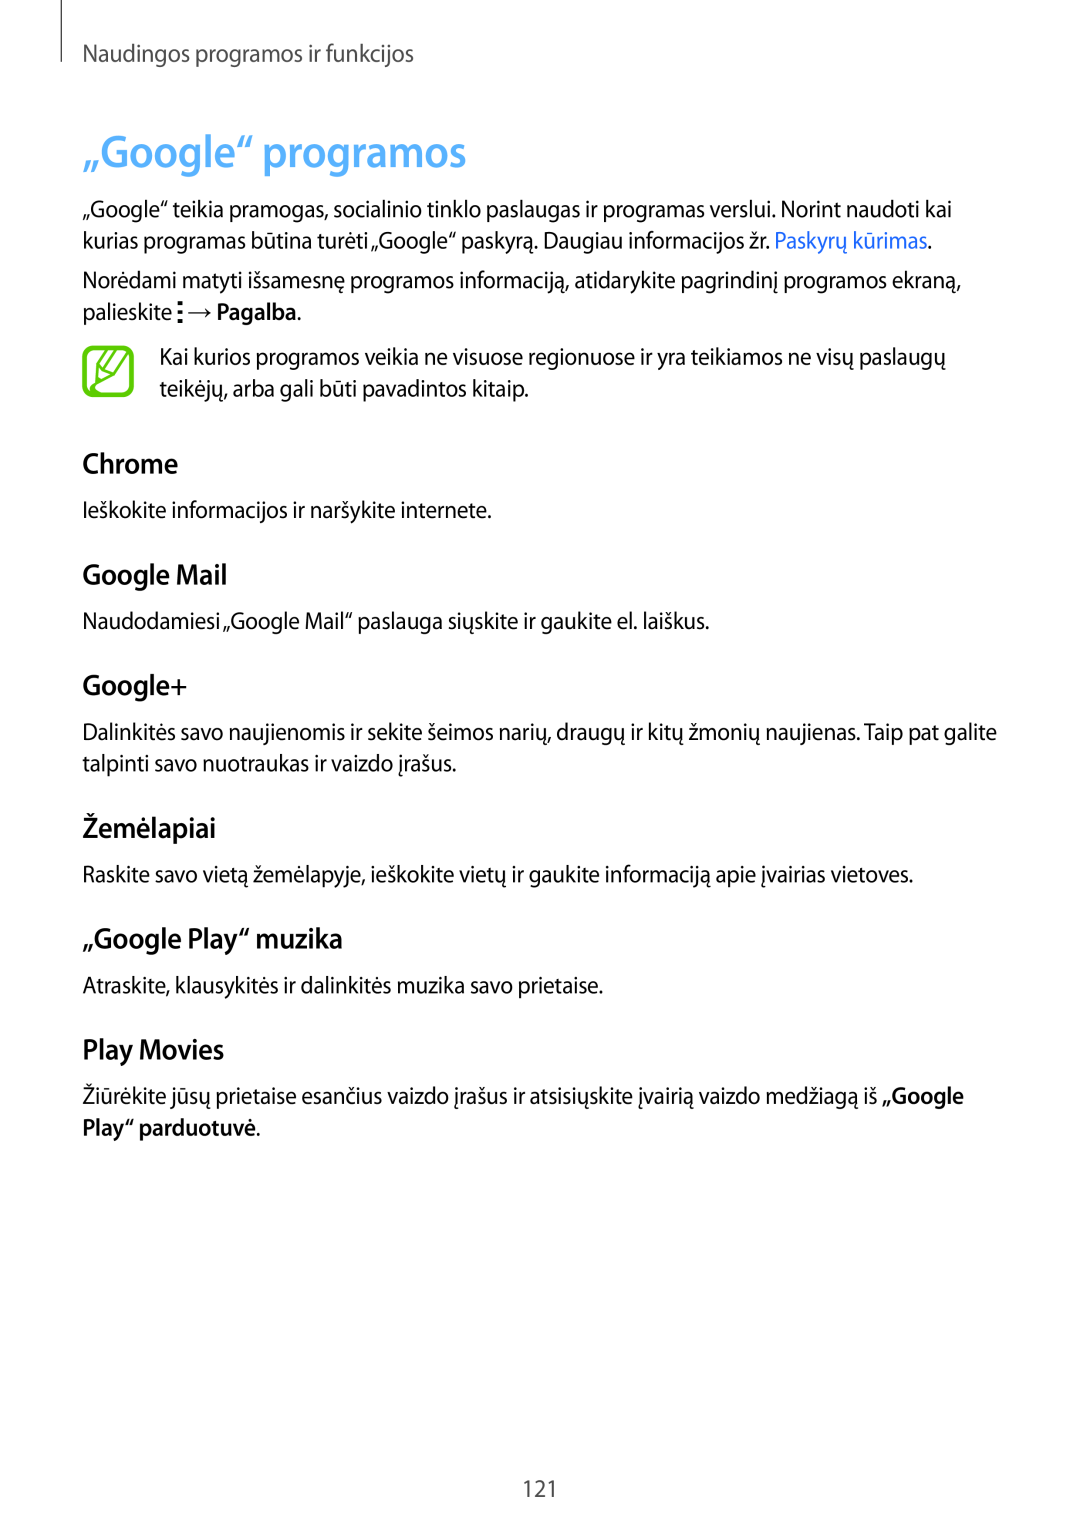 Samsung SM-T800NZWASEB „Google“ programos, Chrome, Google Mail, Google+, Žemėlapiai, „Google Play“ muzika, Play Movies 